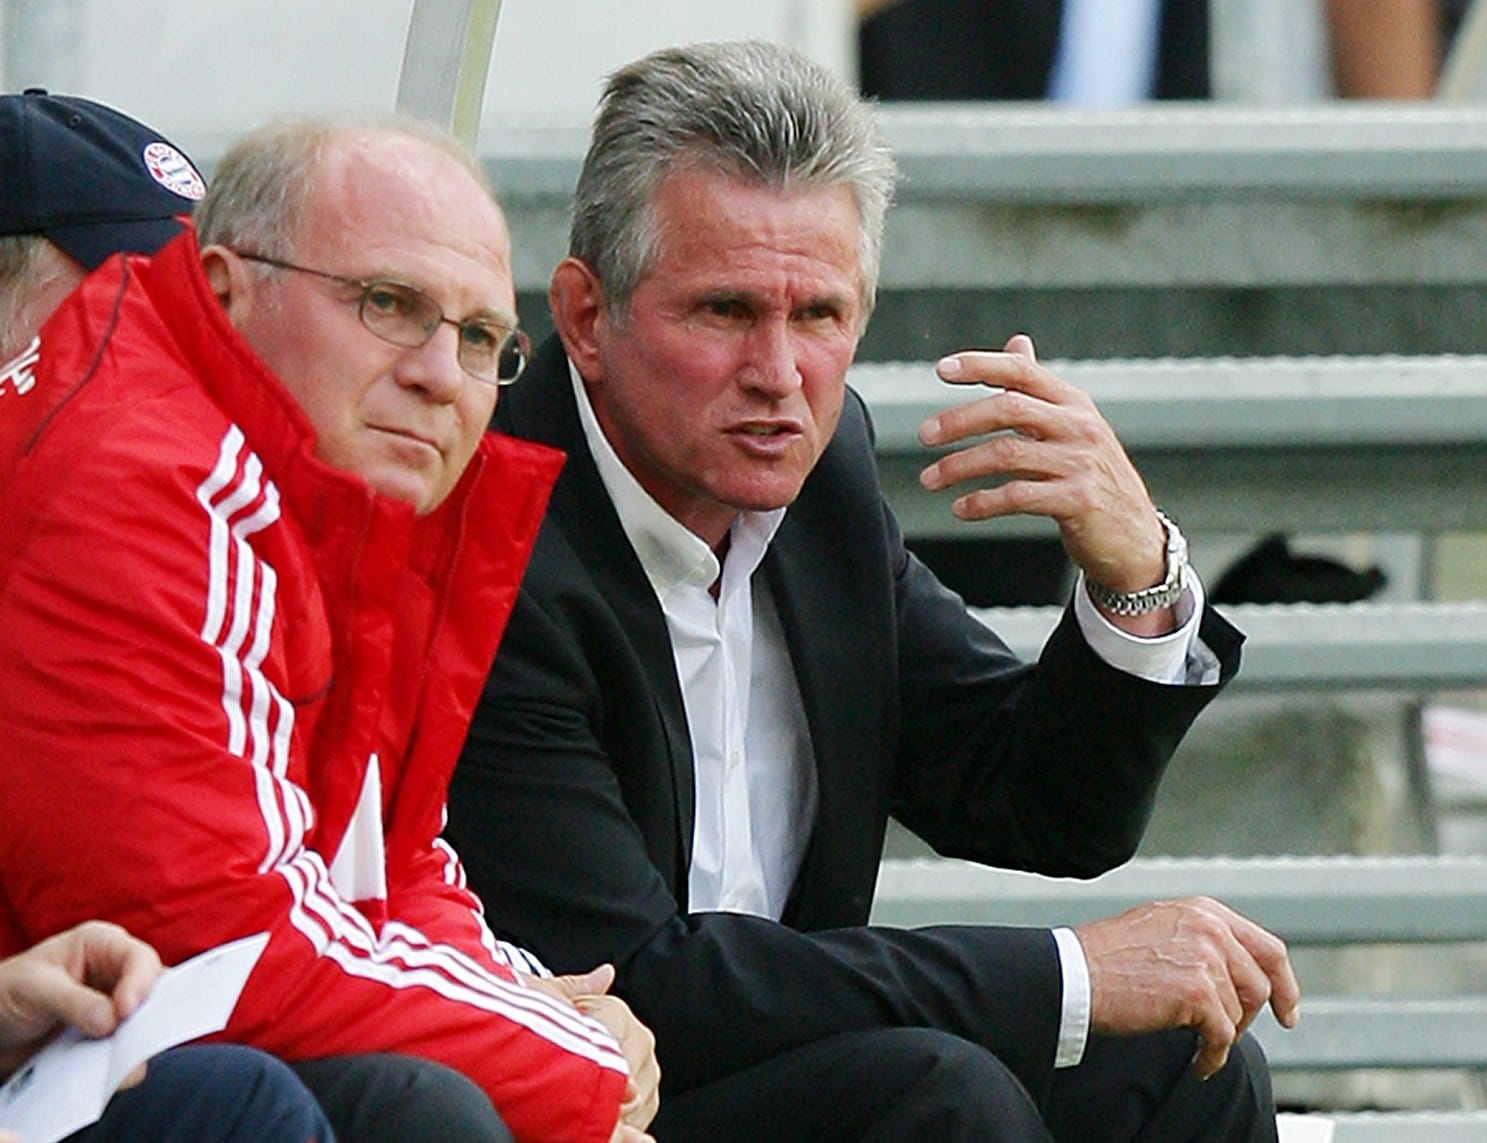 Bayerns Manager Uli Hoeneß (links) holte seinen persönlichen Freund Jupp Heynckes 2009 zurück an die Isar – Vorgänger Jürgen Klinsmann war glücklos geblieben. Der frühere Bundesliga-Torschützenkönig debütierte am 30. Spieltag erfolgreich gegen seine alte Liebe Borussia Mönchengladbach (2:1) und führte die Münchner noch auf Platz zwei.